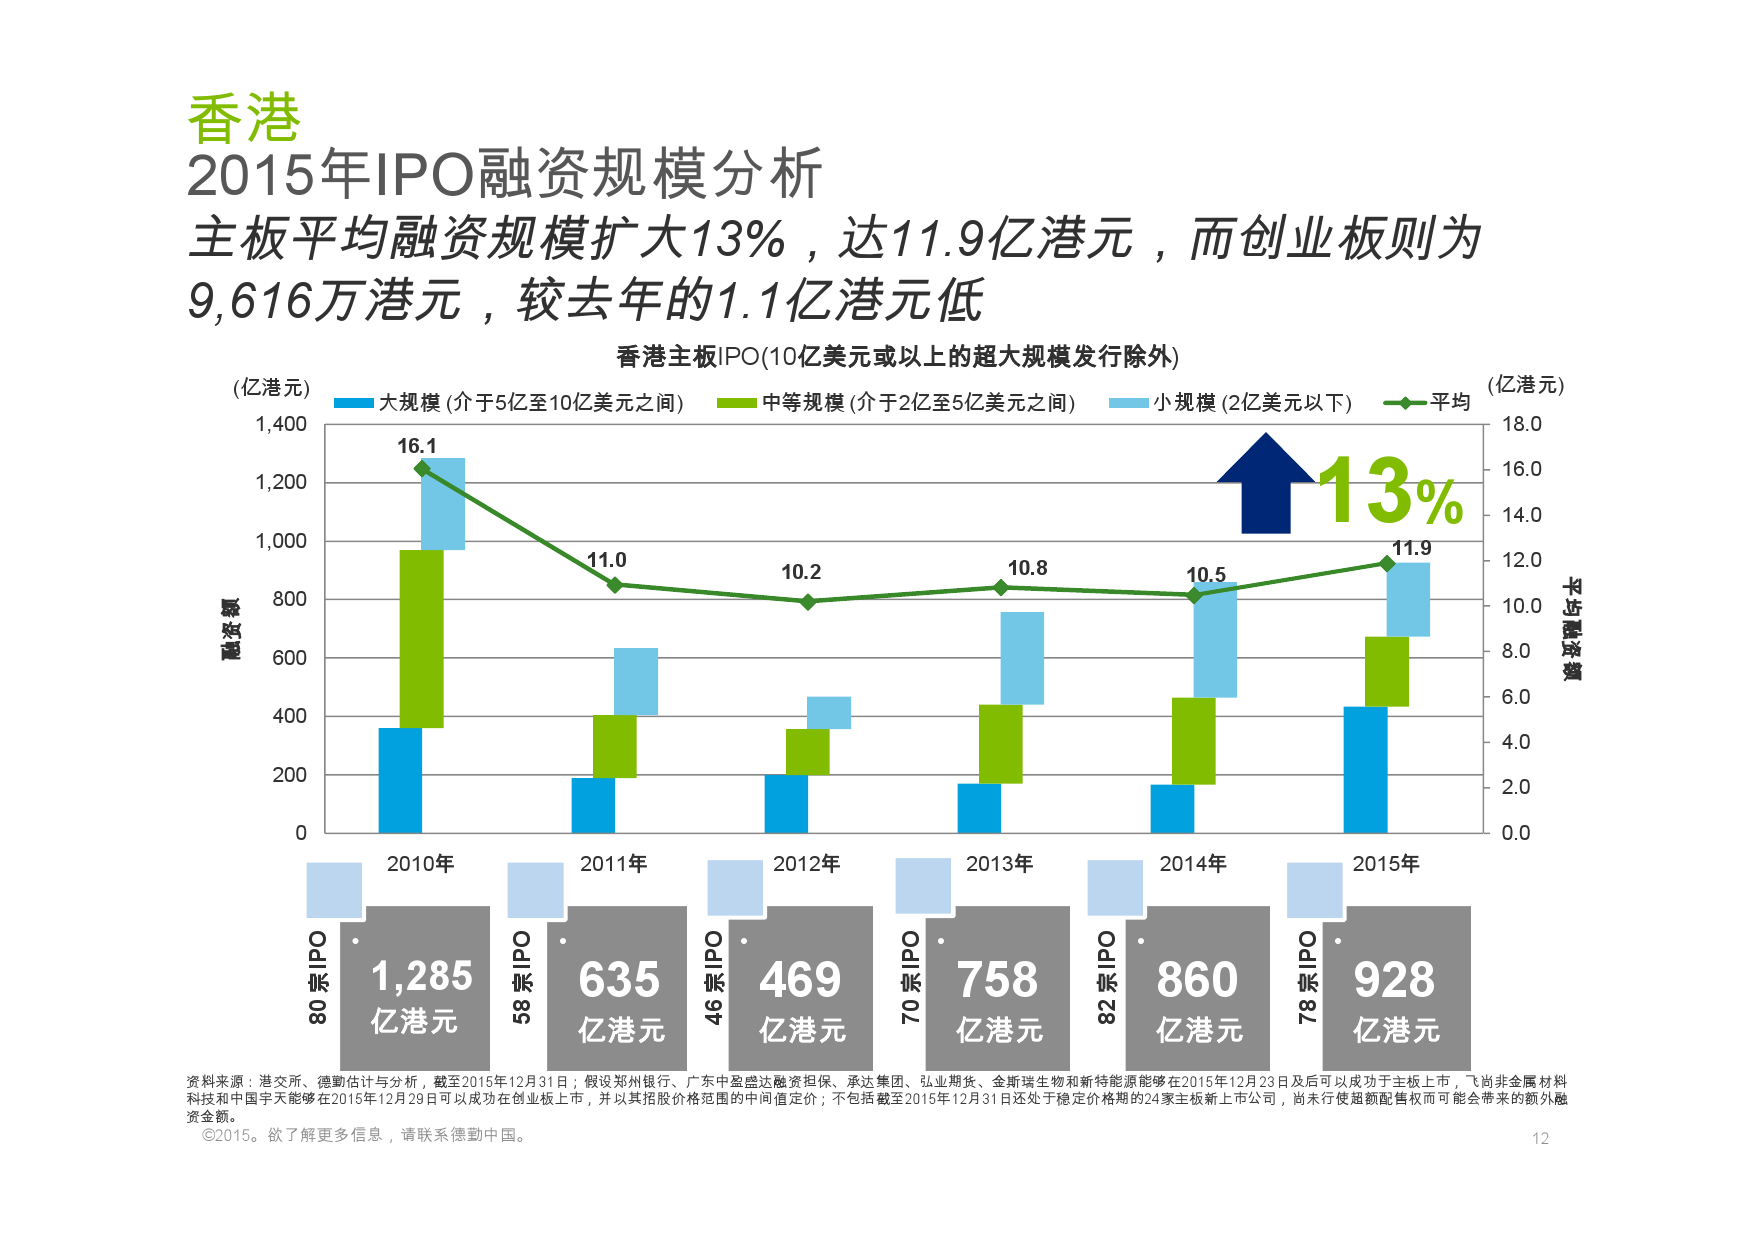 德勤：香港及中国大陆IPO巿场2015年回顾与2016年展望